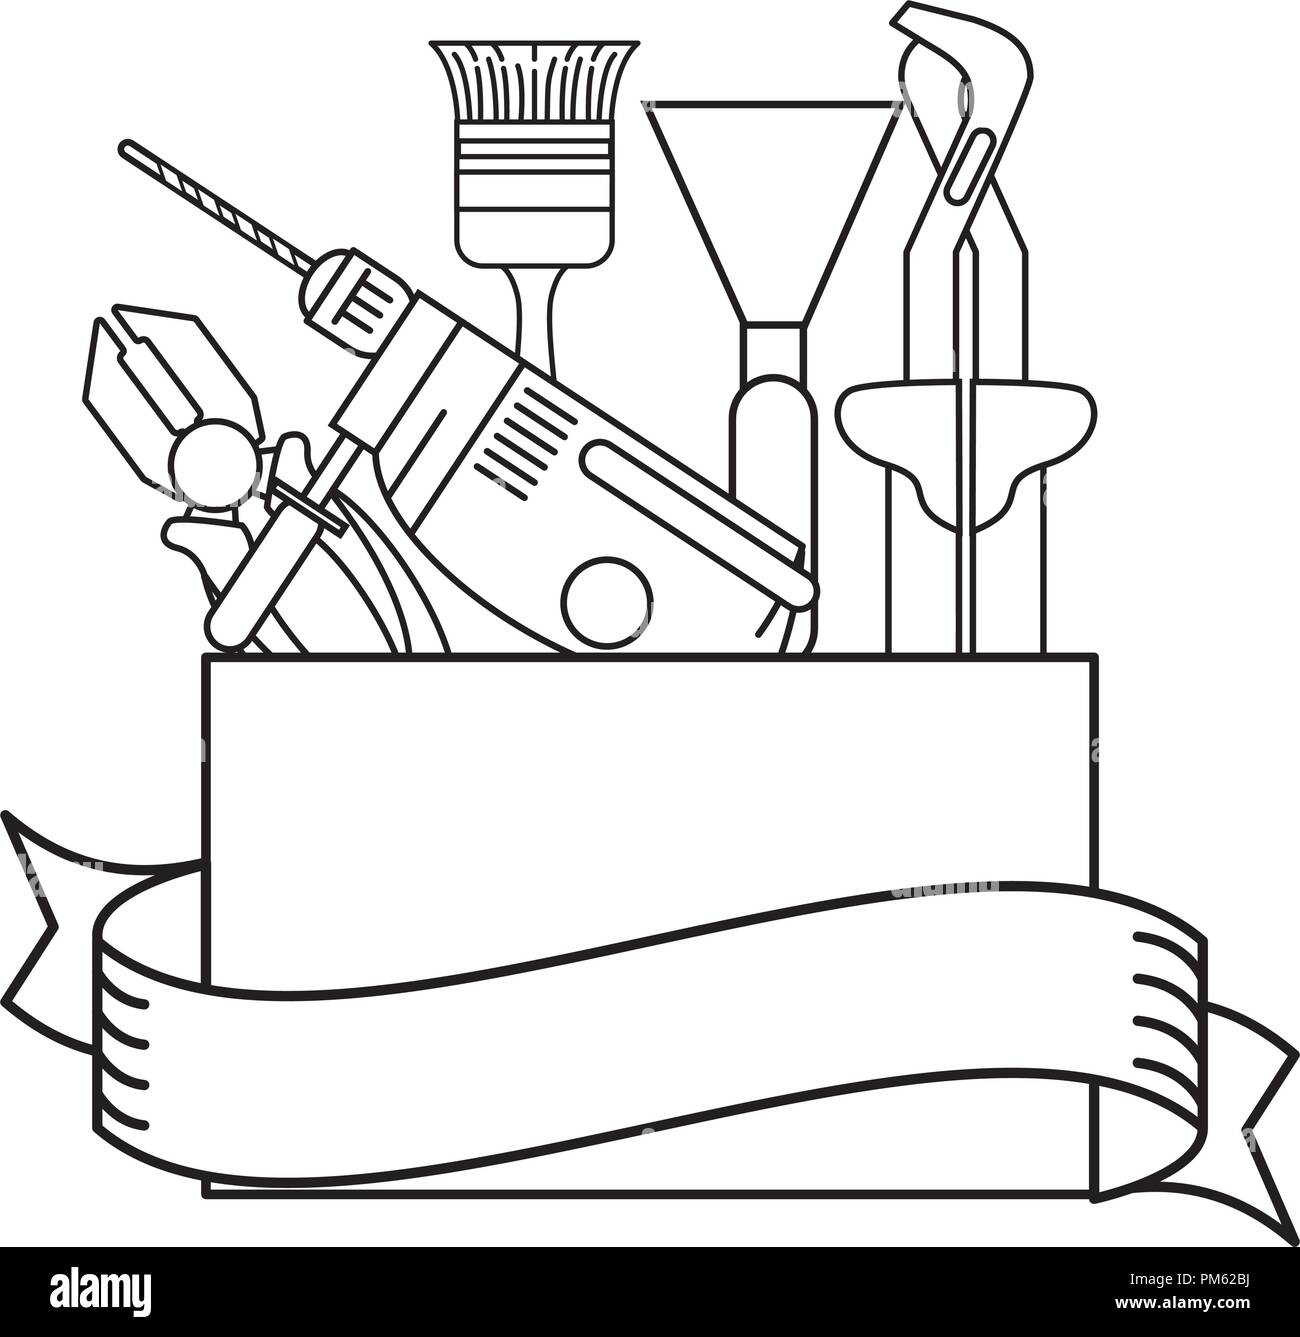 Caja de herramientas de construcción en blanco y negro Imagen Vector de  stock - Alamy